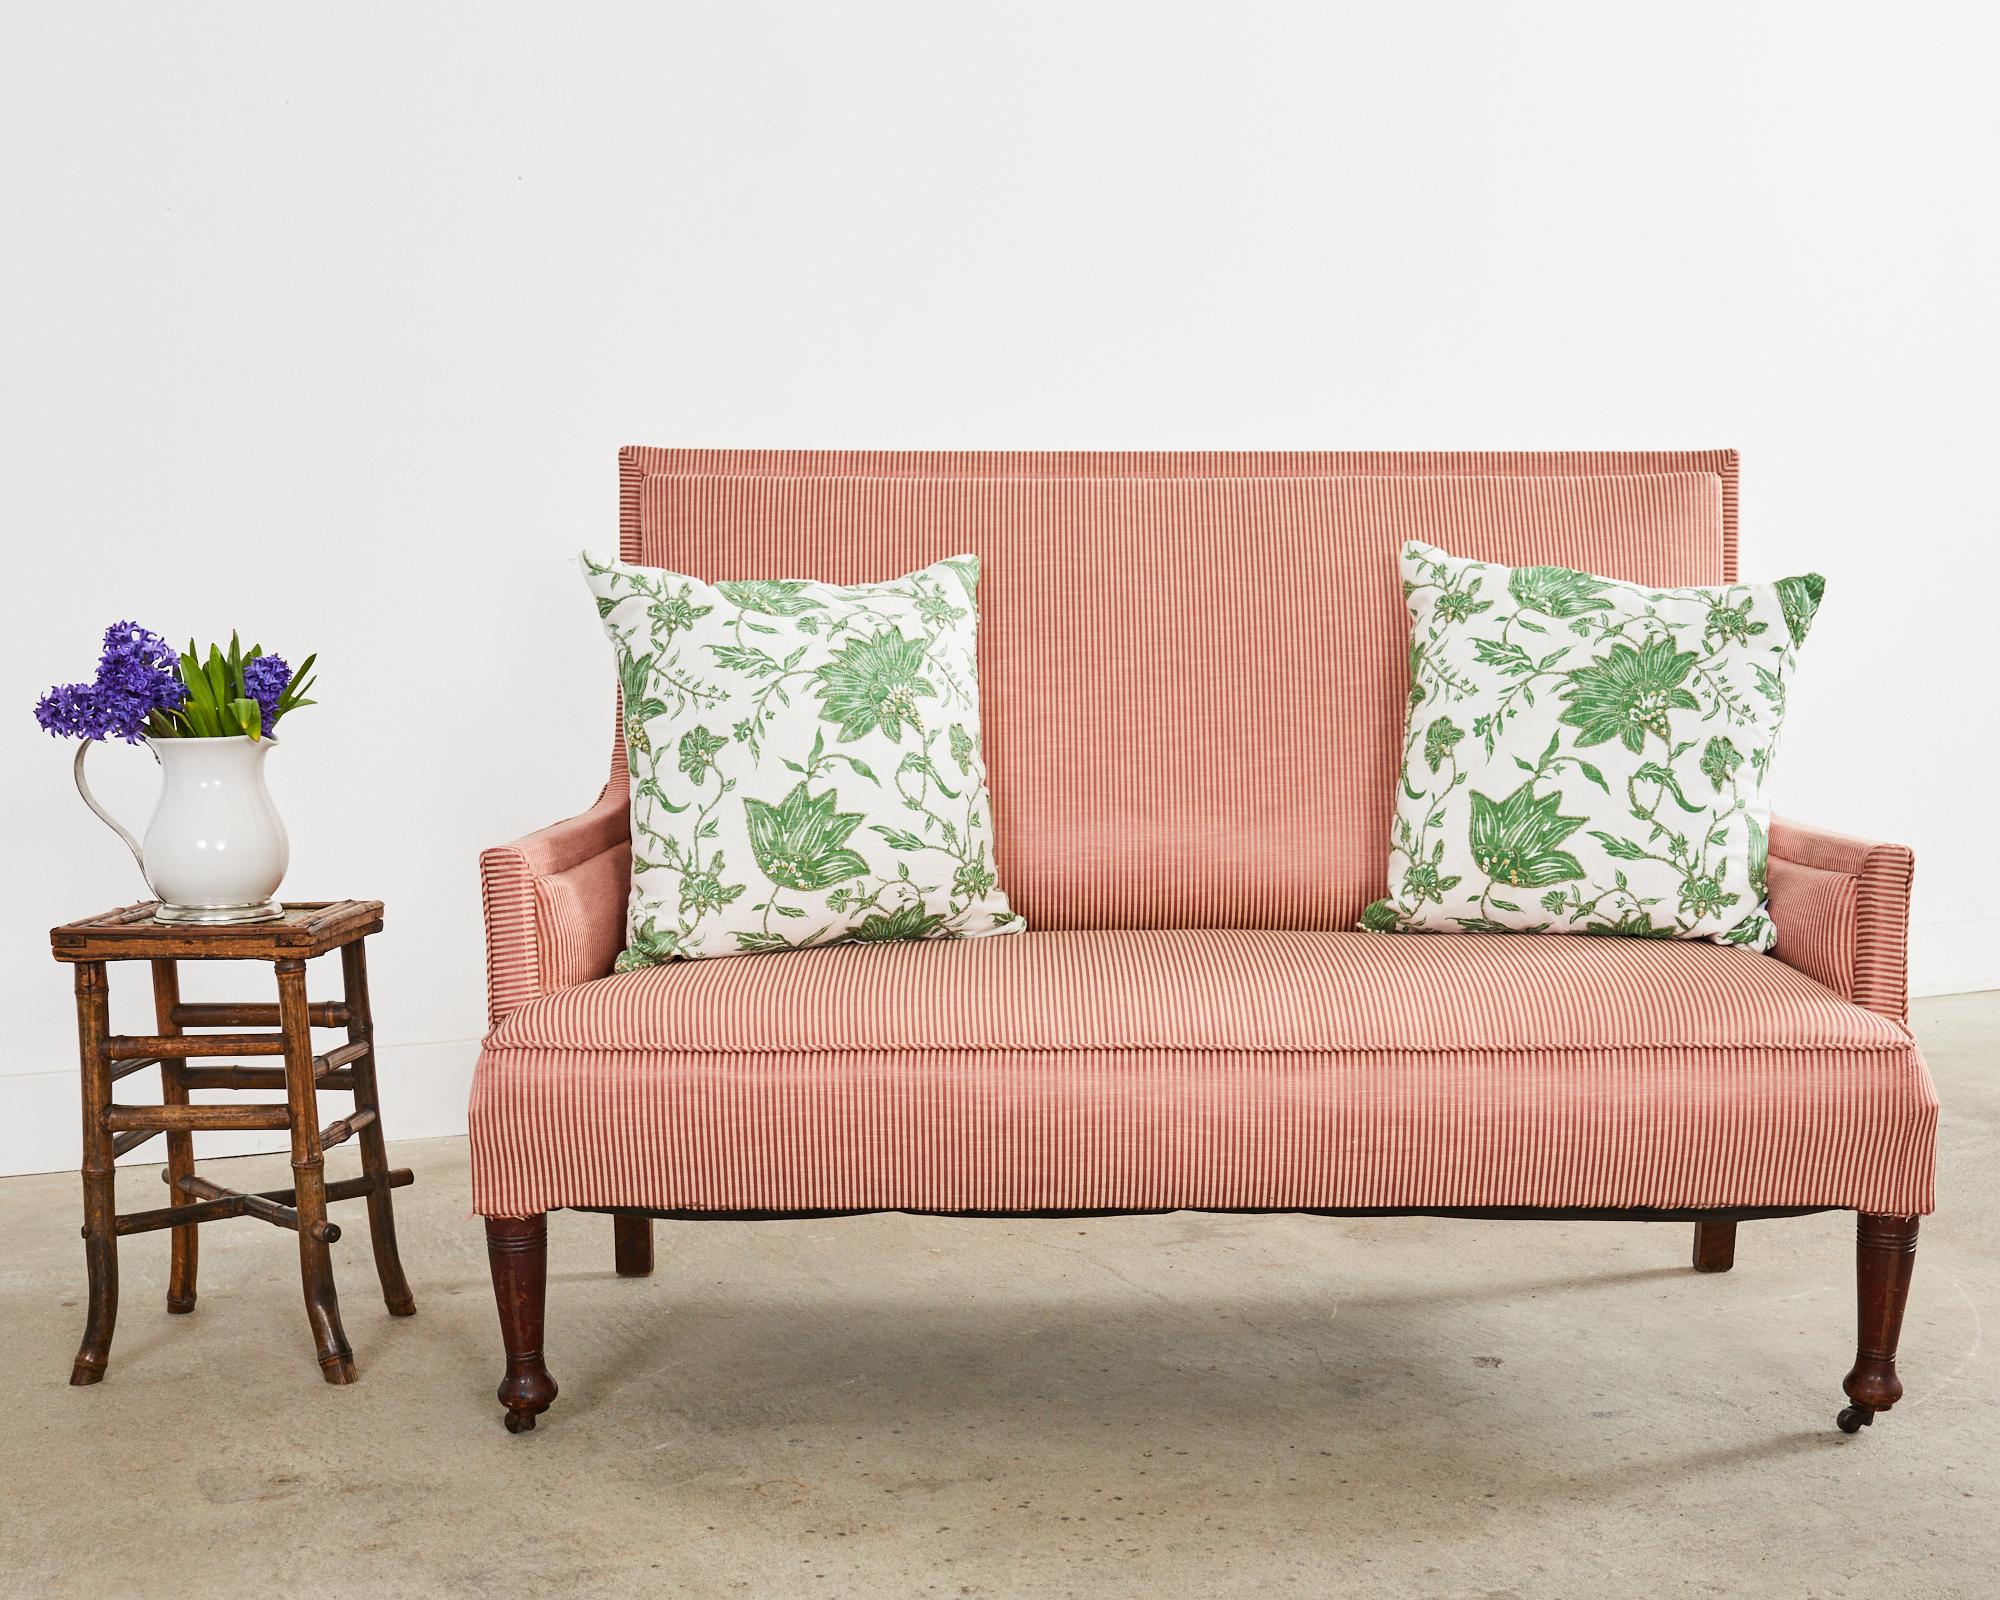 Canapé ou sofa rembourré en acajou de la fin du 19e siècle, de style régence anglaise. Magnifiquement réalisée avec une restauration ancienne, elle présente un haut dossier carré en acajou qui s'incurve gracieusement jusqu'aux accoudoirs plats